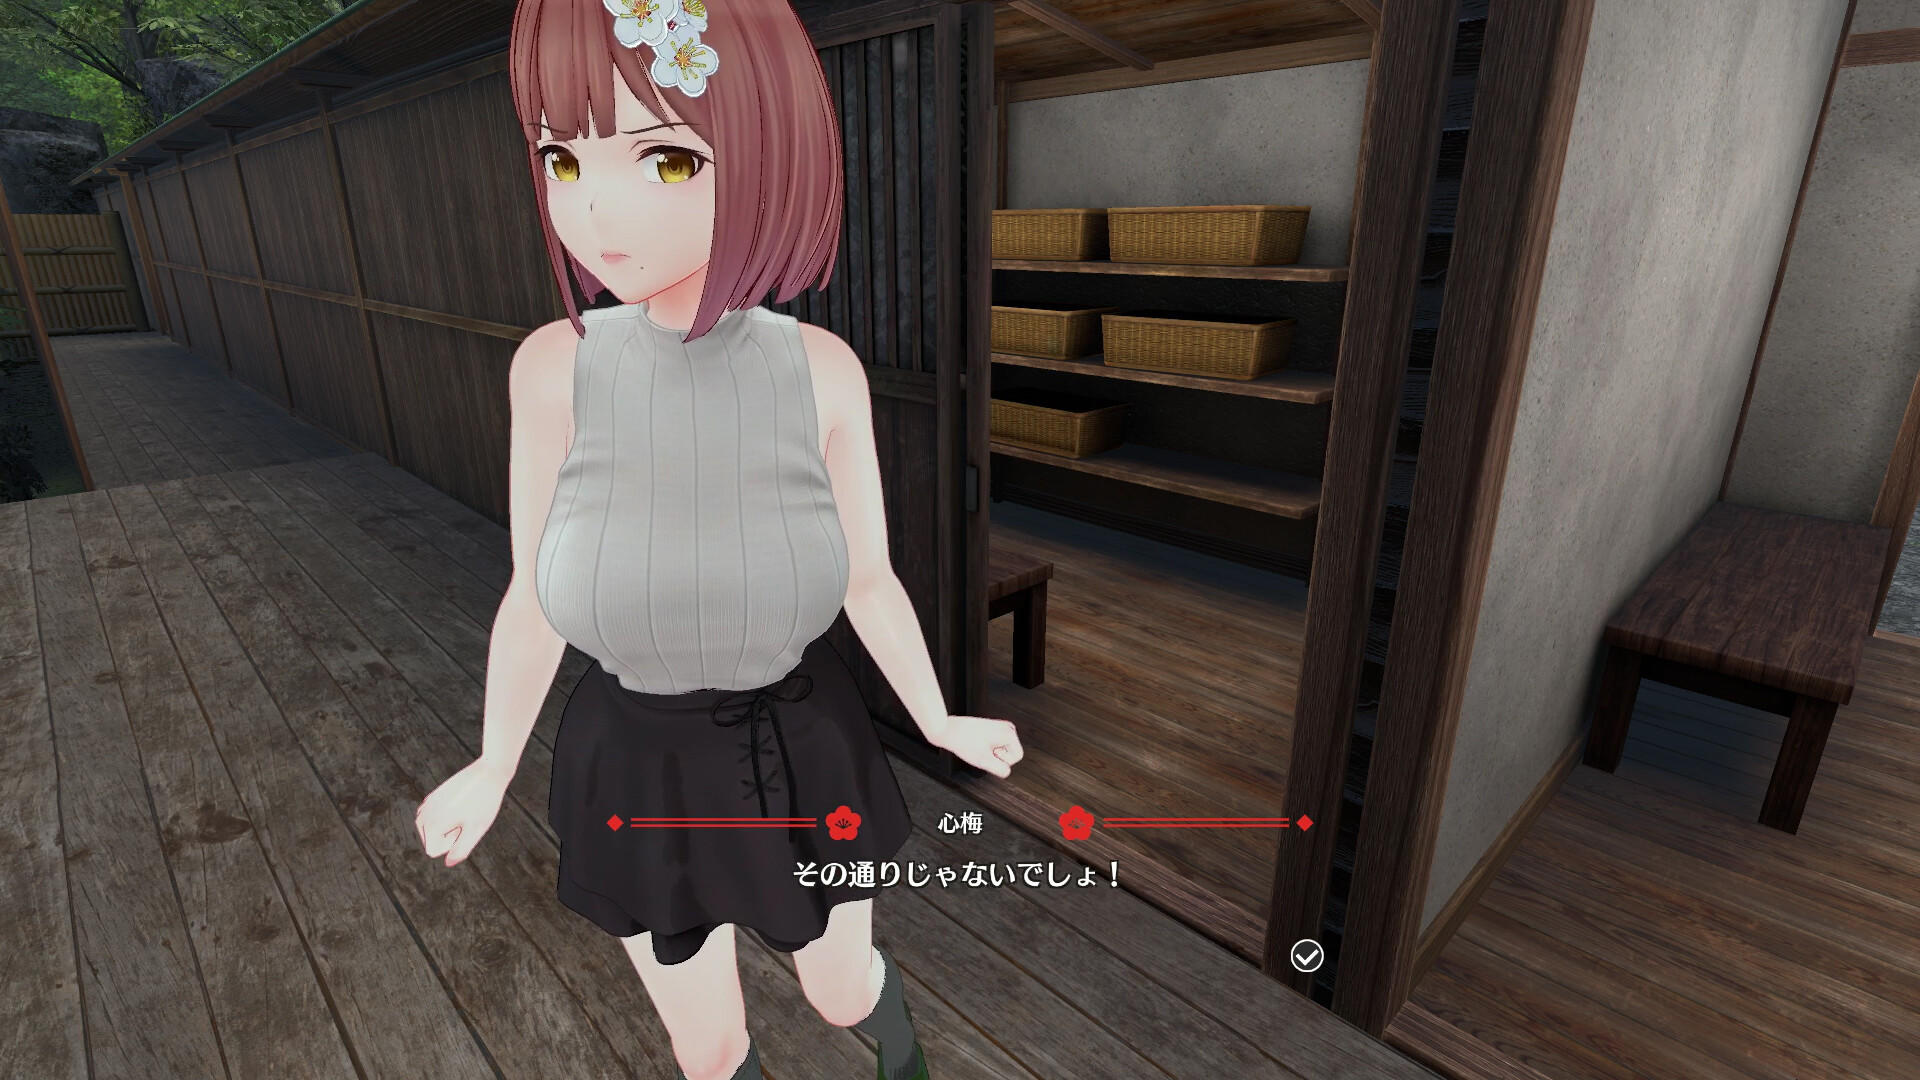 Koi-Koi: Love Blossoms Non-VR Edition遊戲截圖